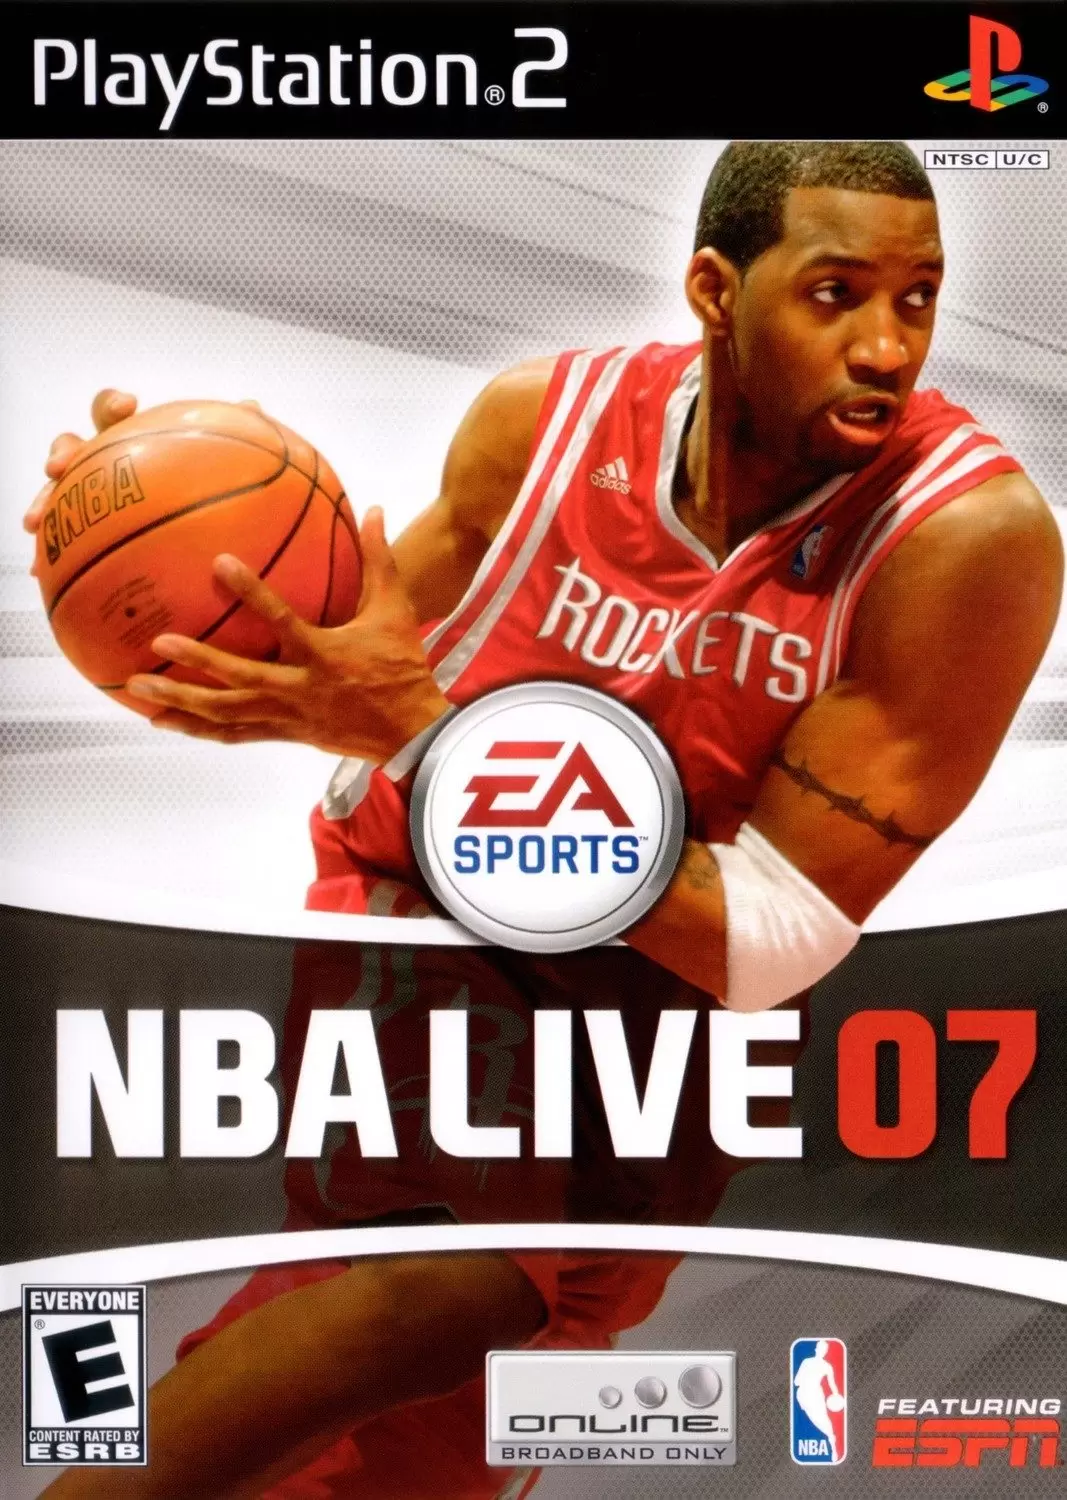 PS2 Games - NBA Live 07